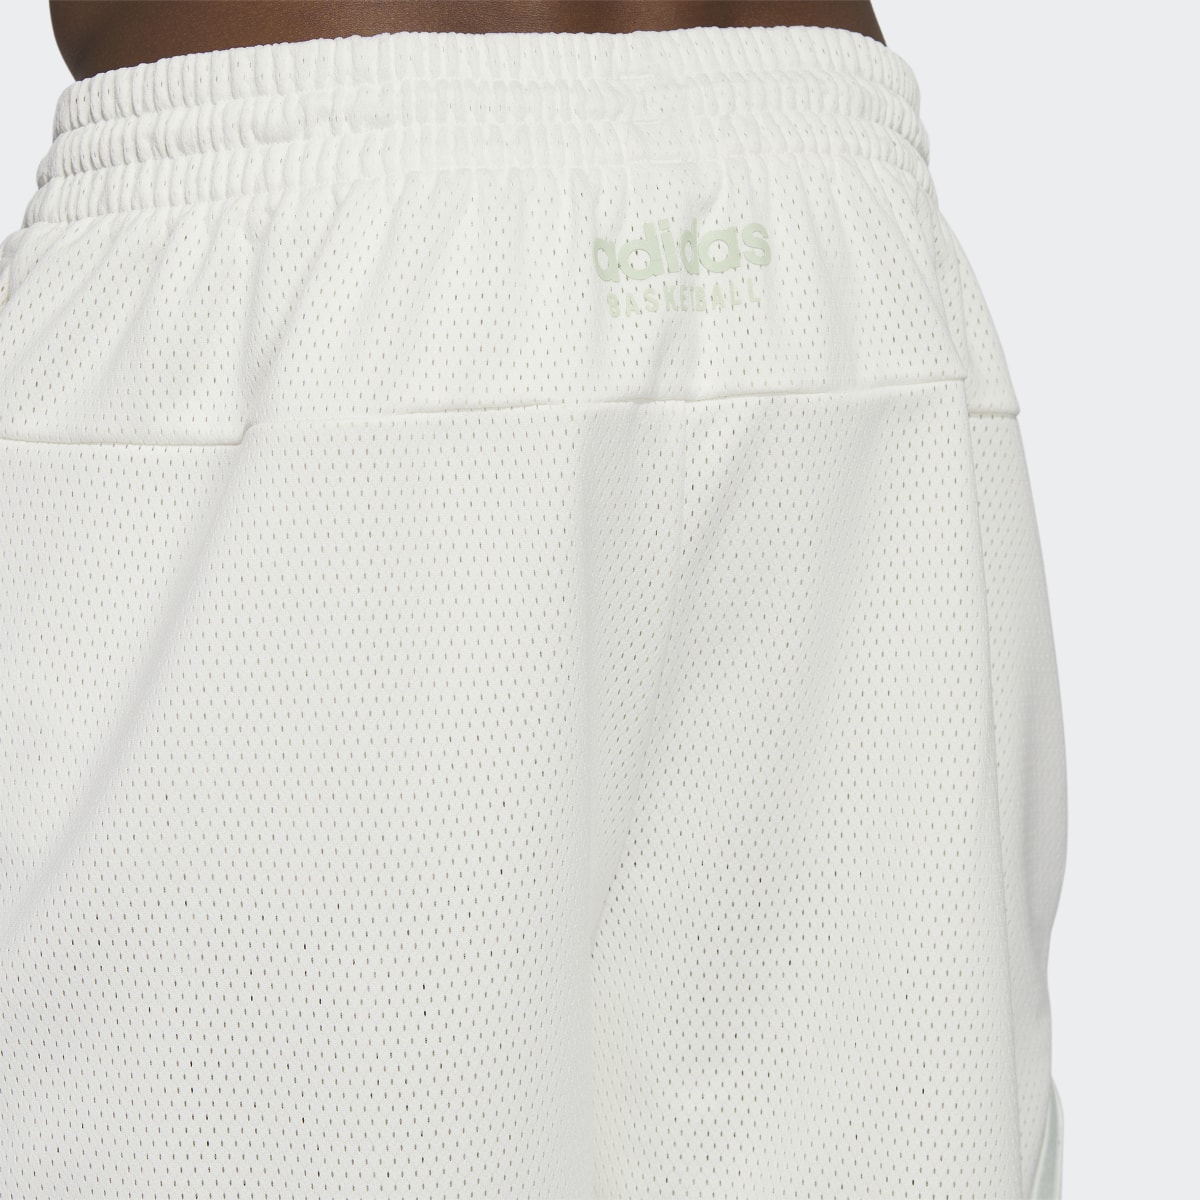 Adidas Select Summer Shorts. 6